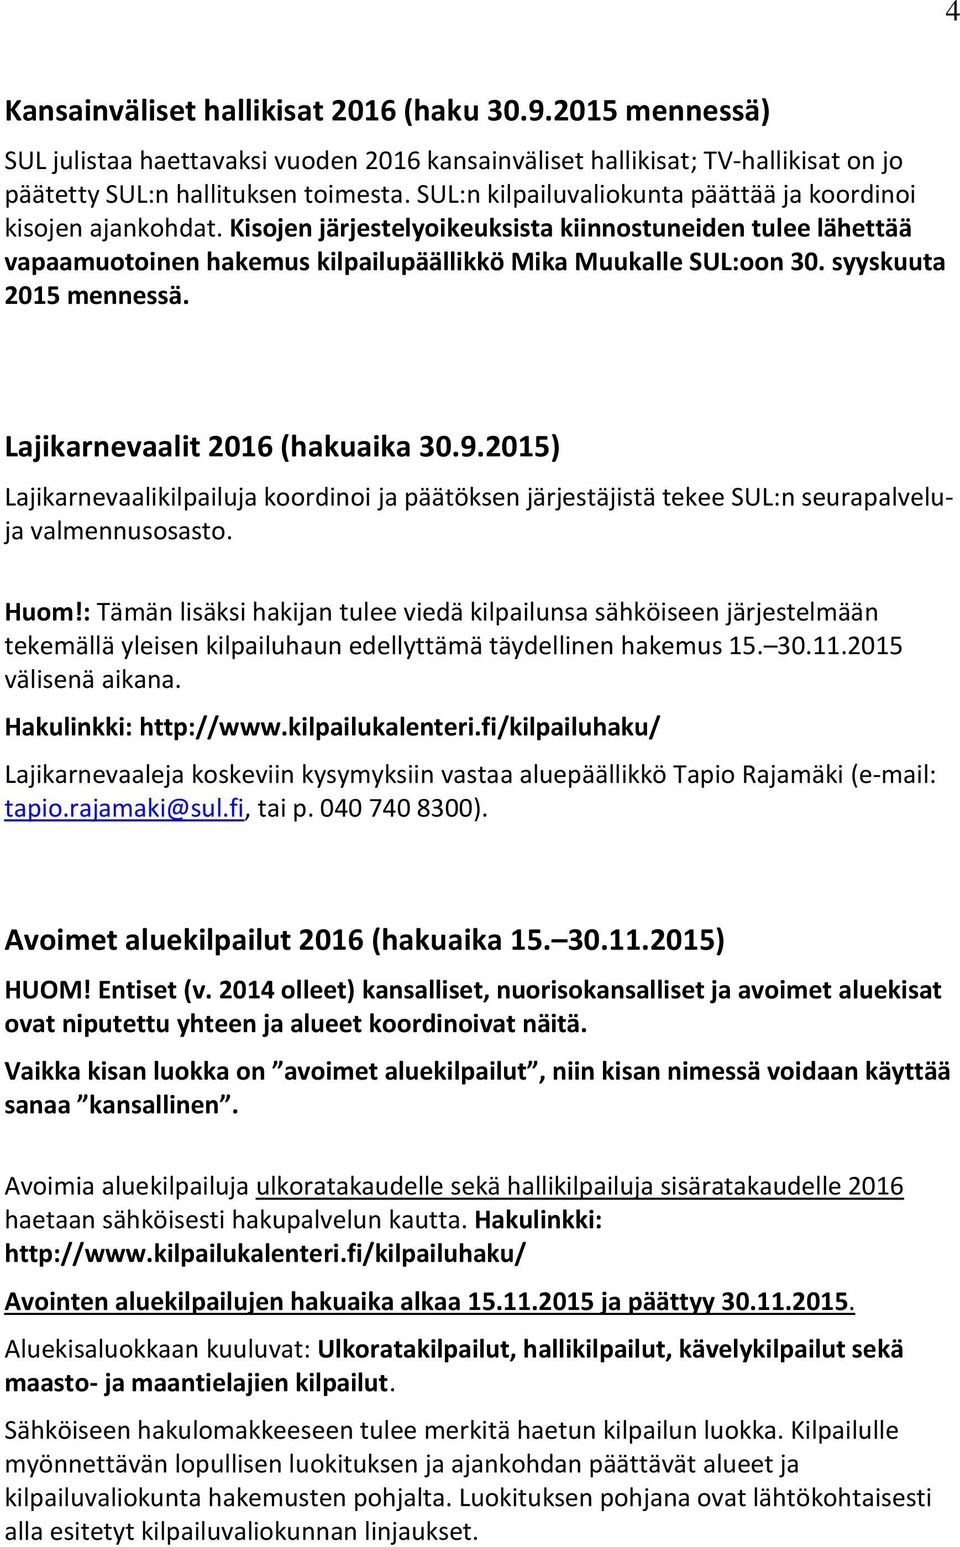 syyskuuta 2015 mennessä. Lajikarnevaalit 2016 (hakuaika 30.9.2015) Lajikarnevaalikilpailuja koordinoi ja päätöksen järjestäjistä tekee SUL:n seurapalveluja valmennusosasto. Huom!